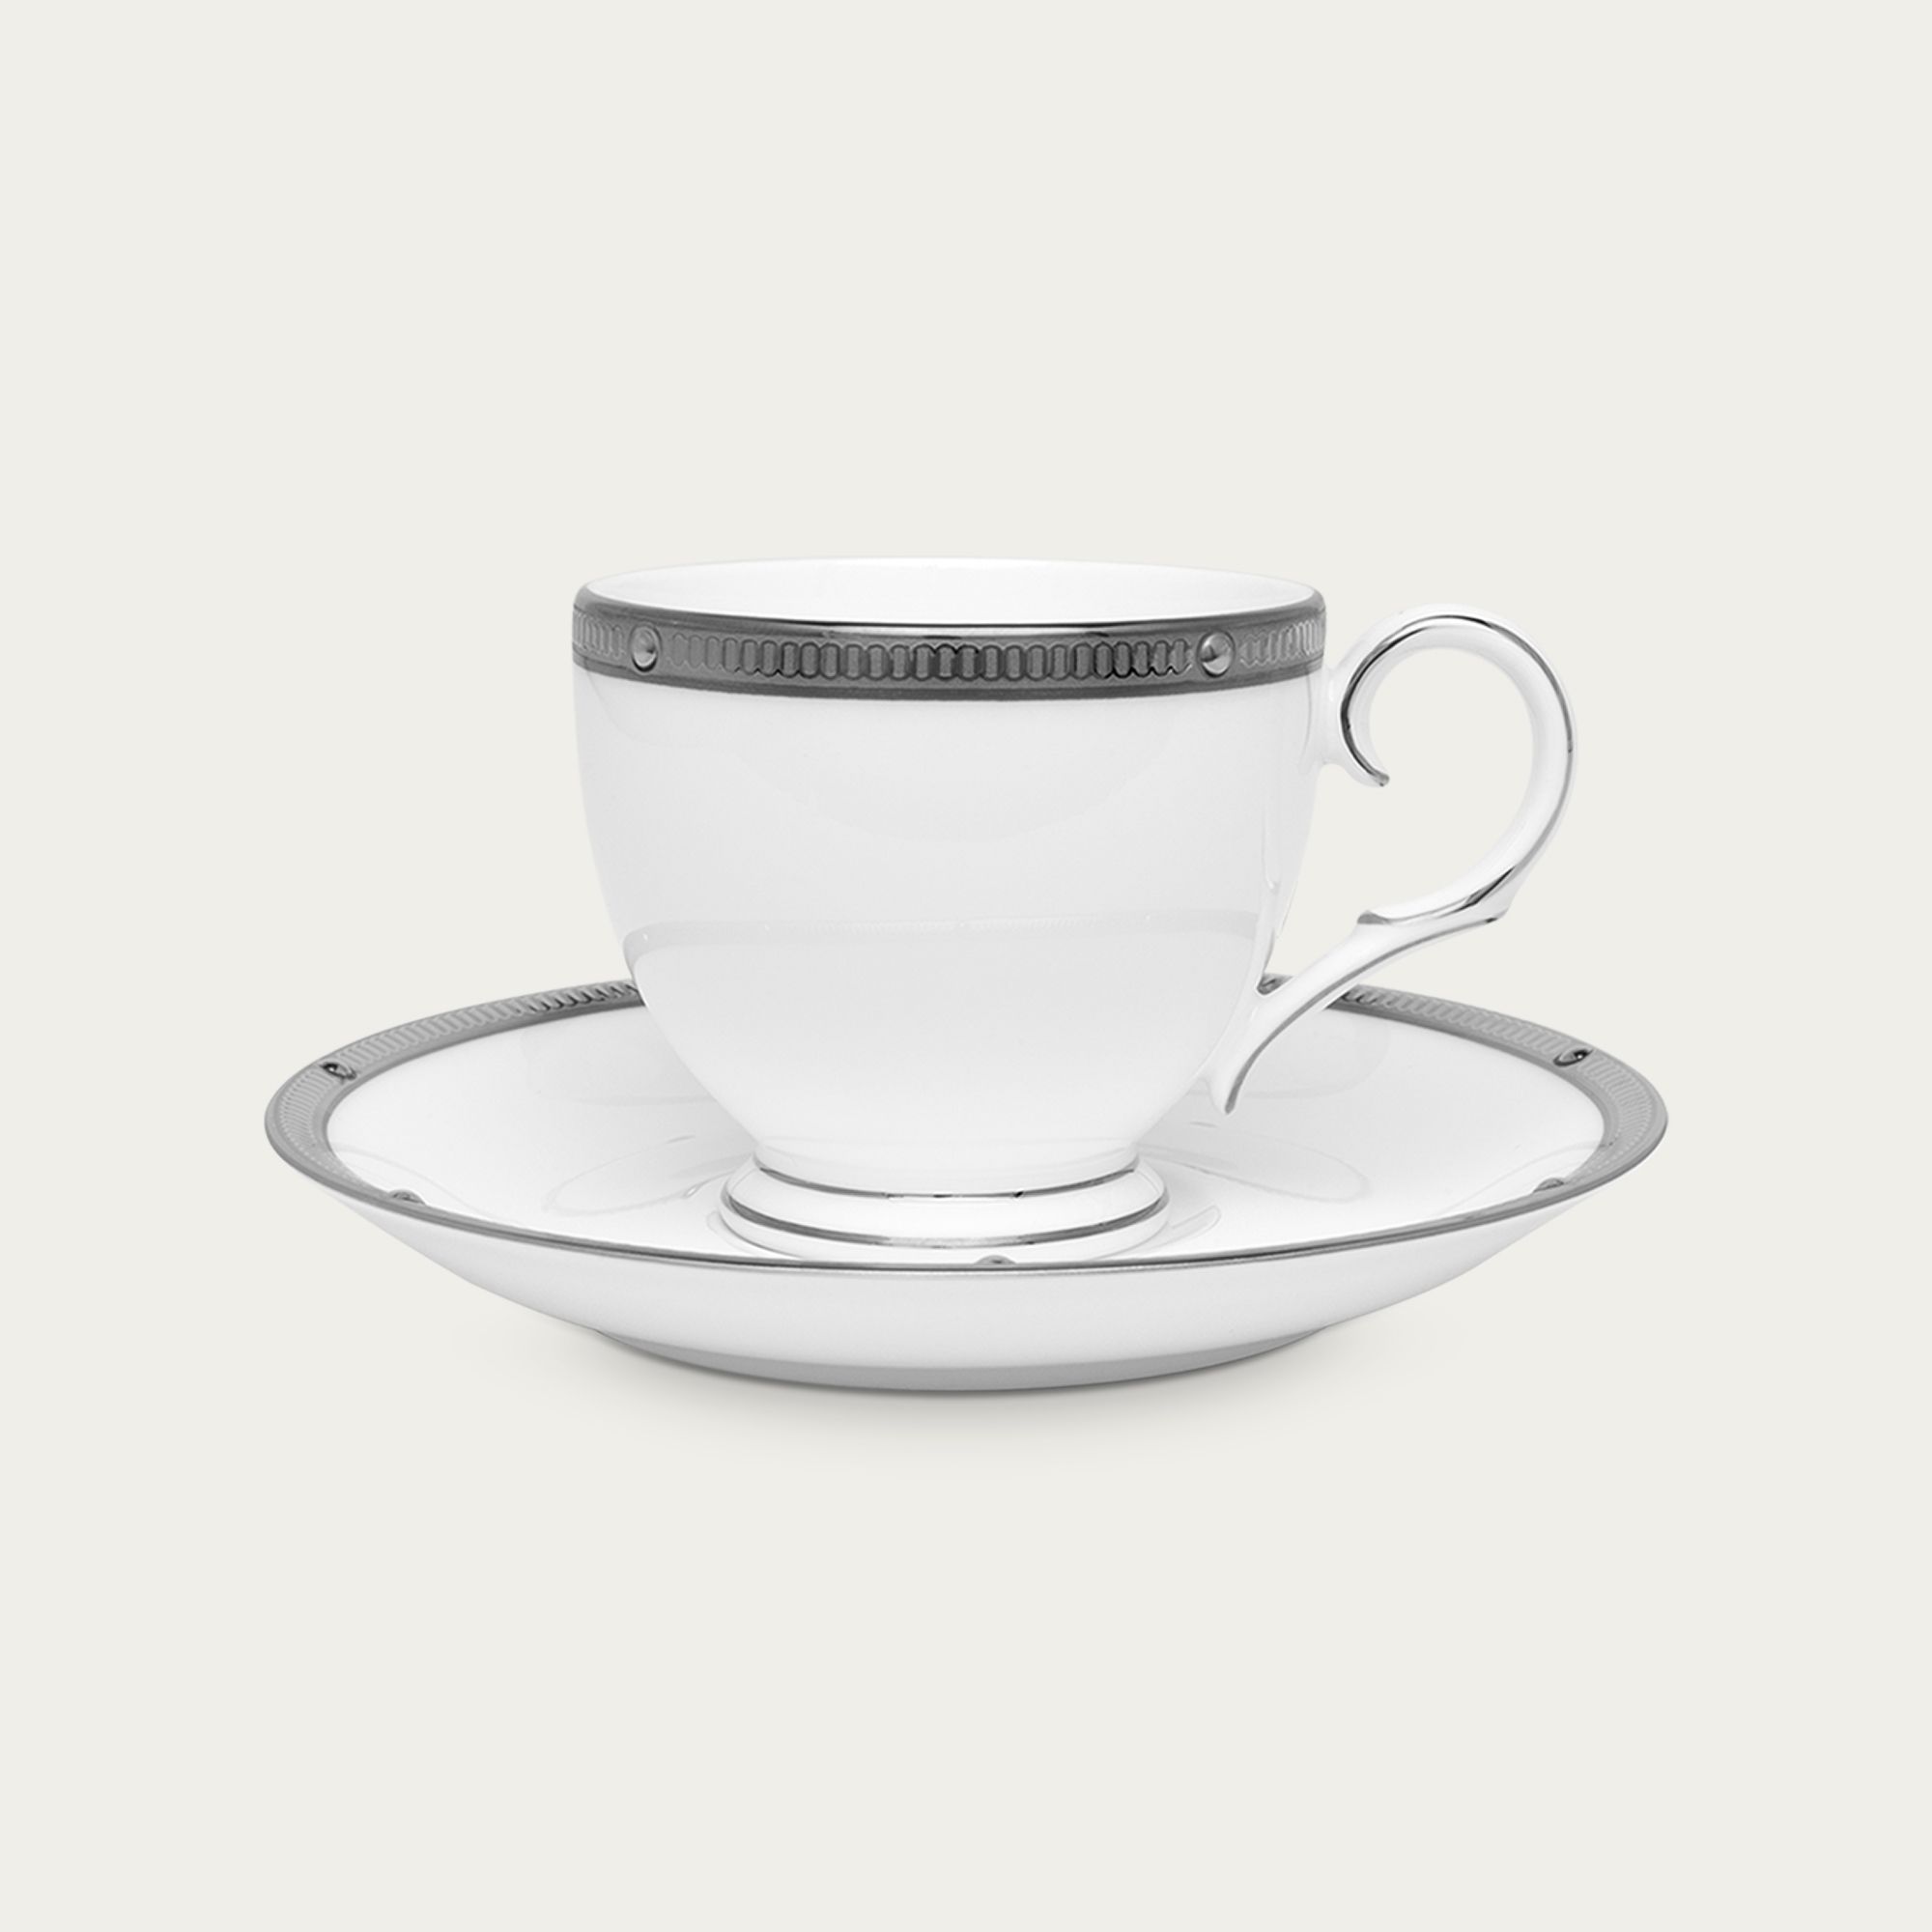  Chén trà (tách trà) 250ml kèm đĩa lót | Rochelle Platinum 4795L-T50788A 